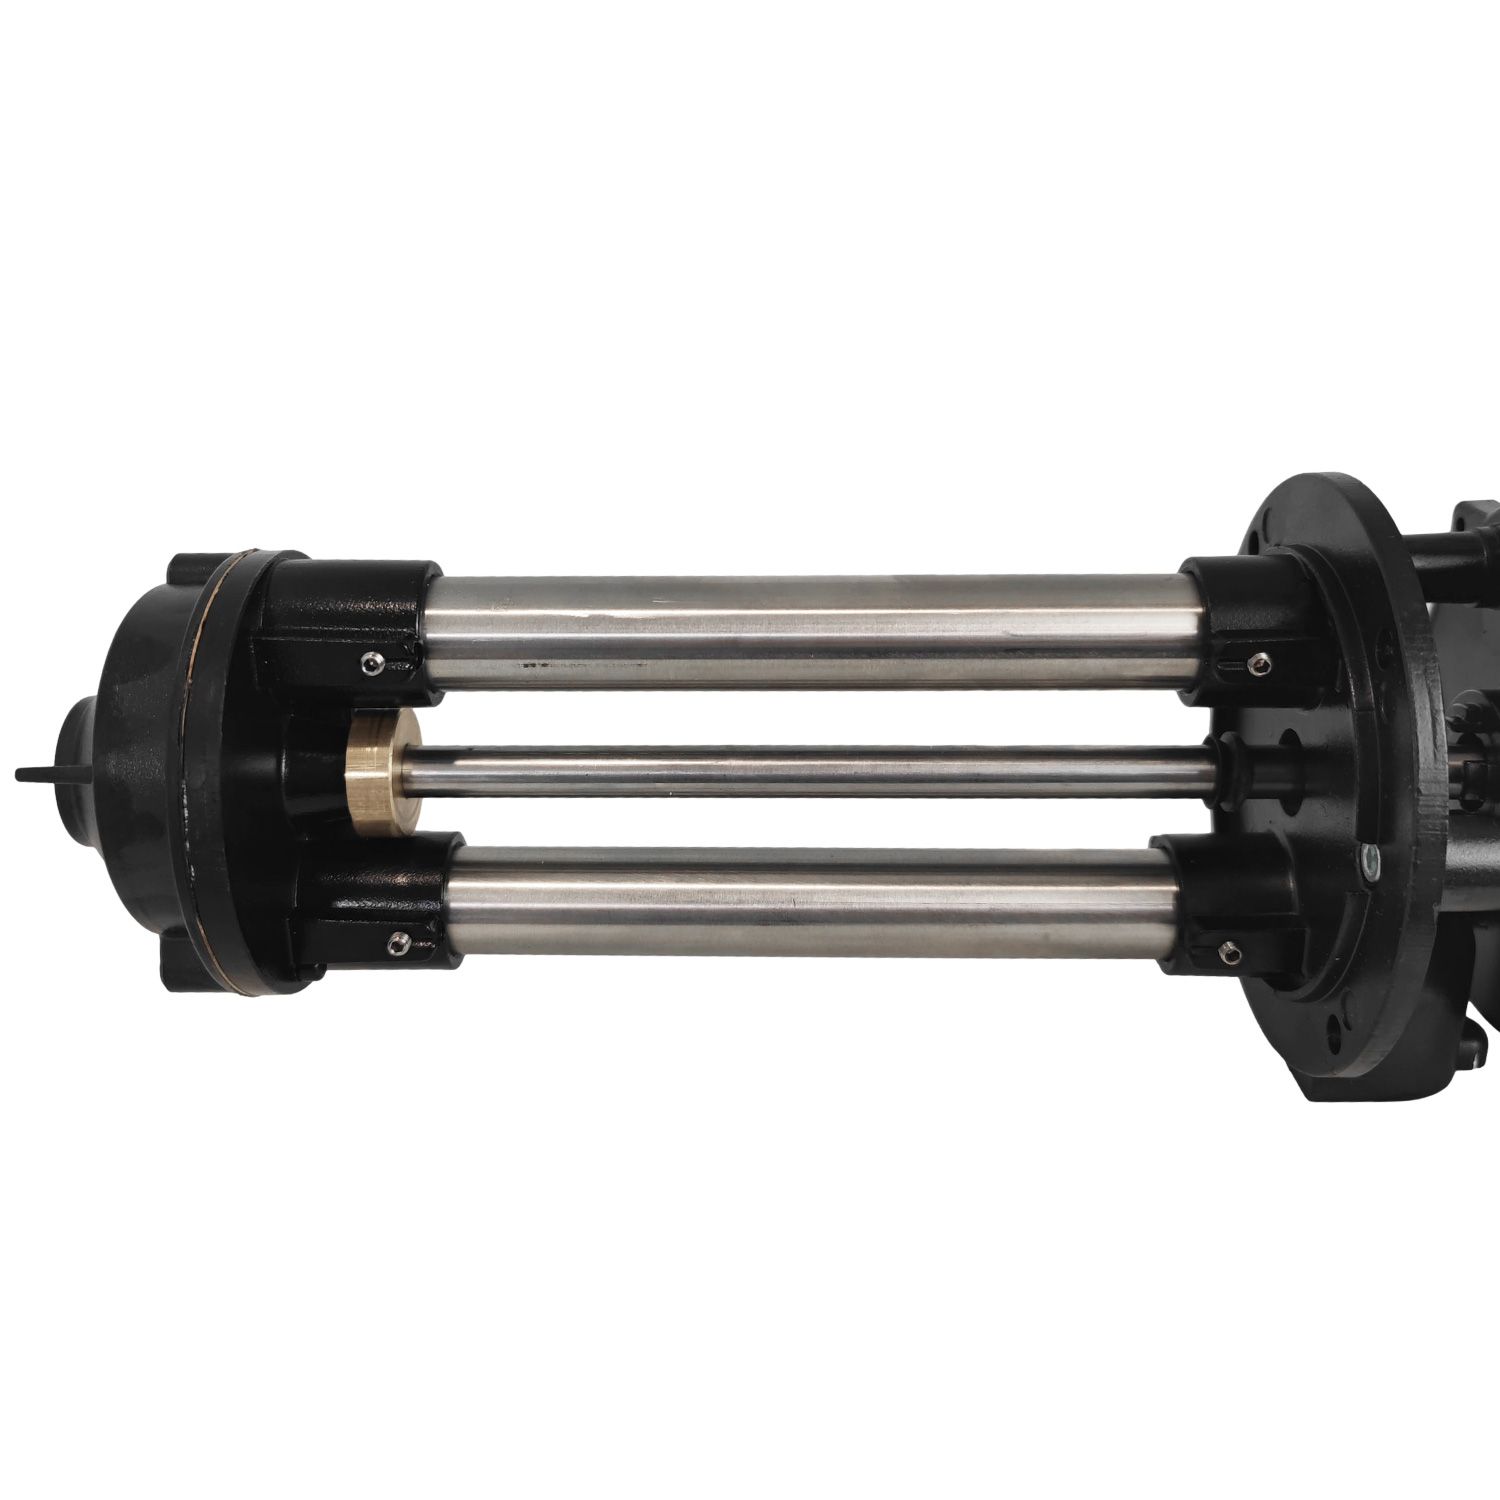 Pompes centrifuge roue ouverte H270mm basse pression 380V - 0.5Kw